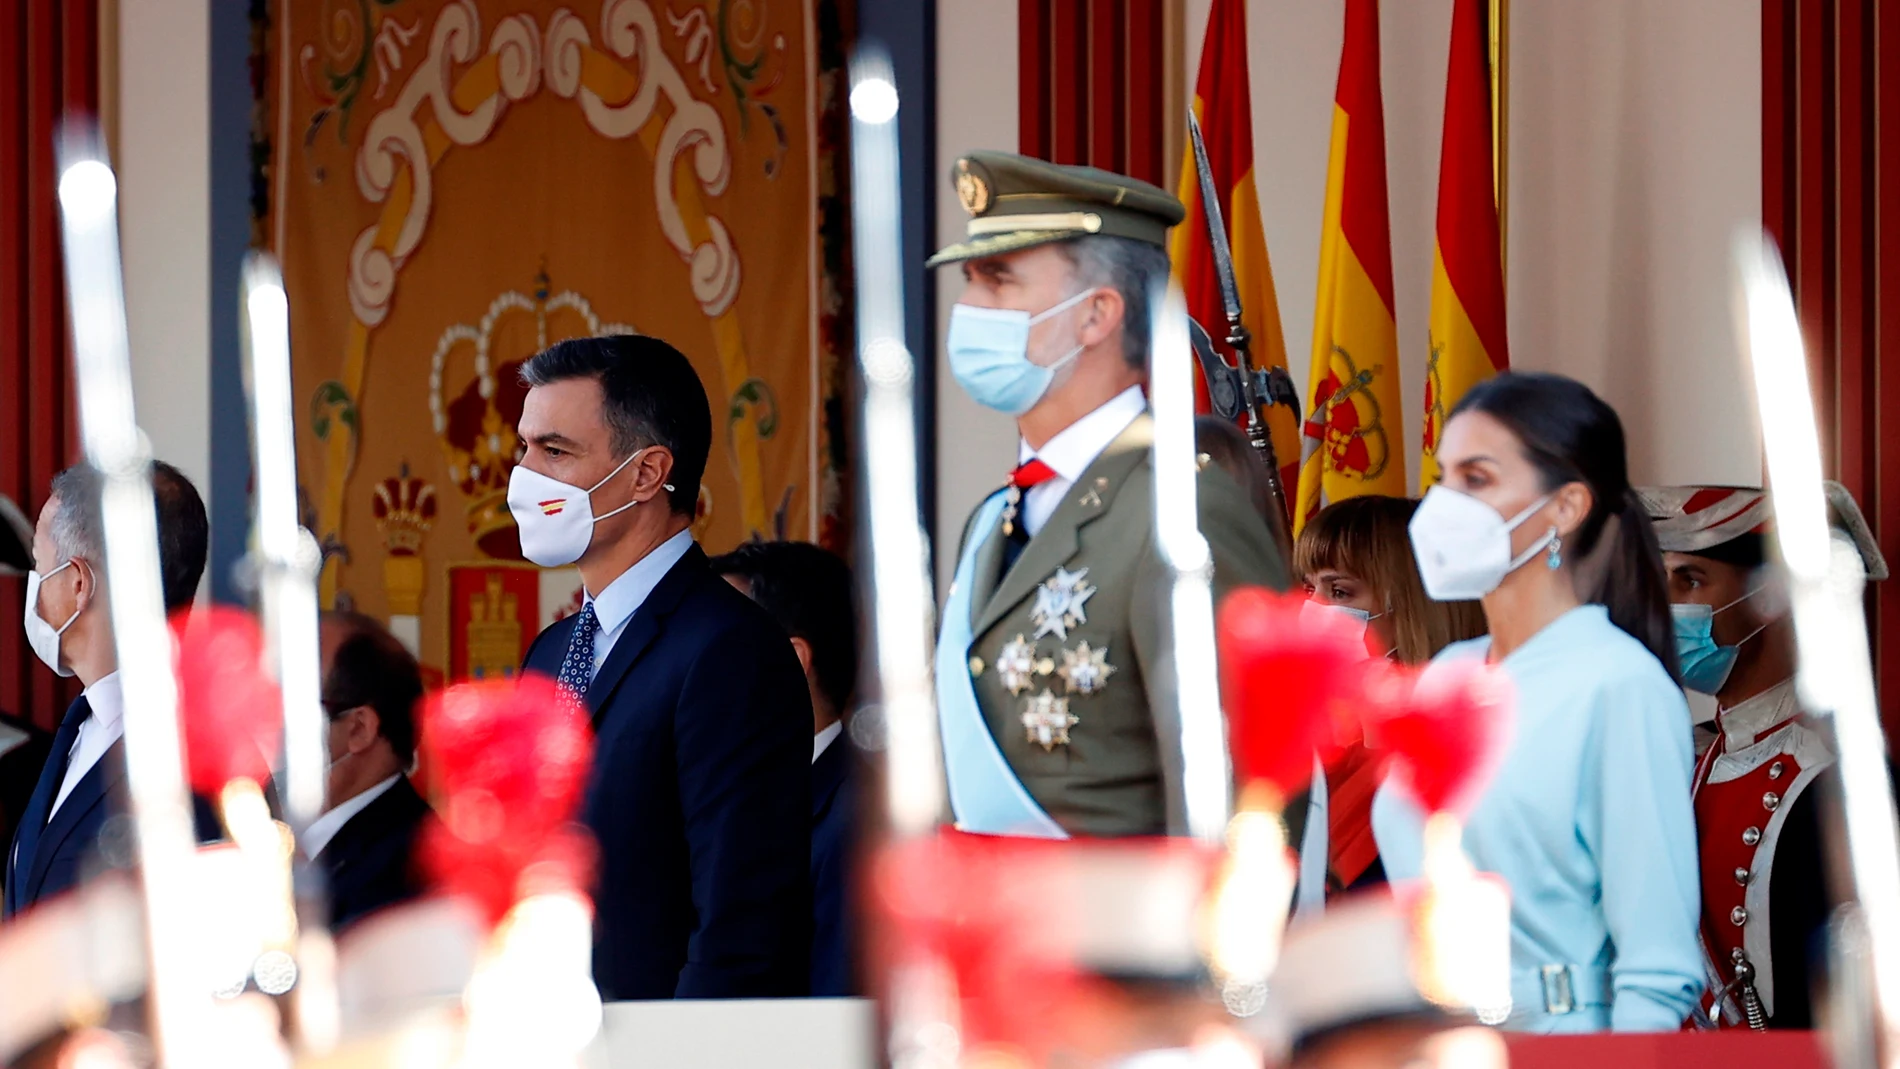 Aplausos al rey e insultos a Sánchez: el desfile militar del 12 de octubre vuelve a las calles tras la pandemia